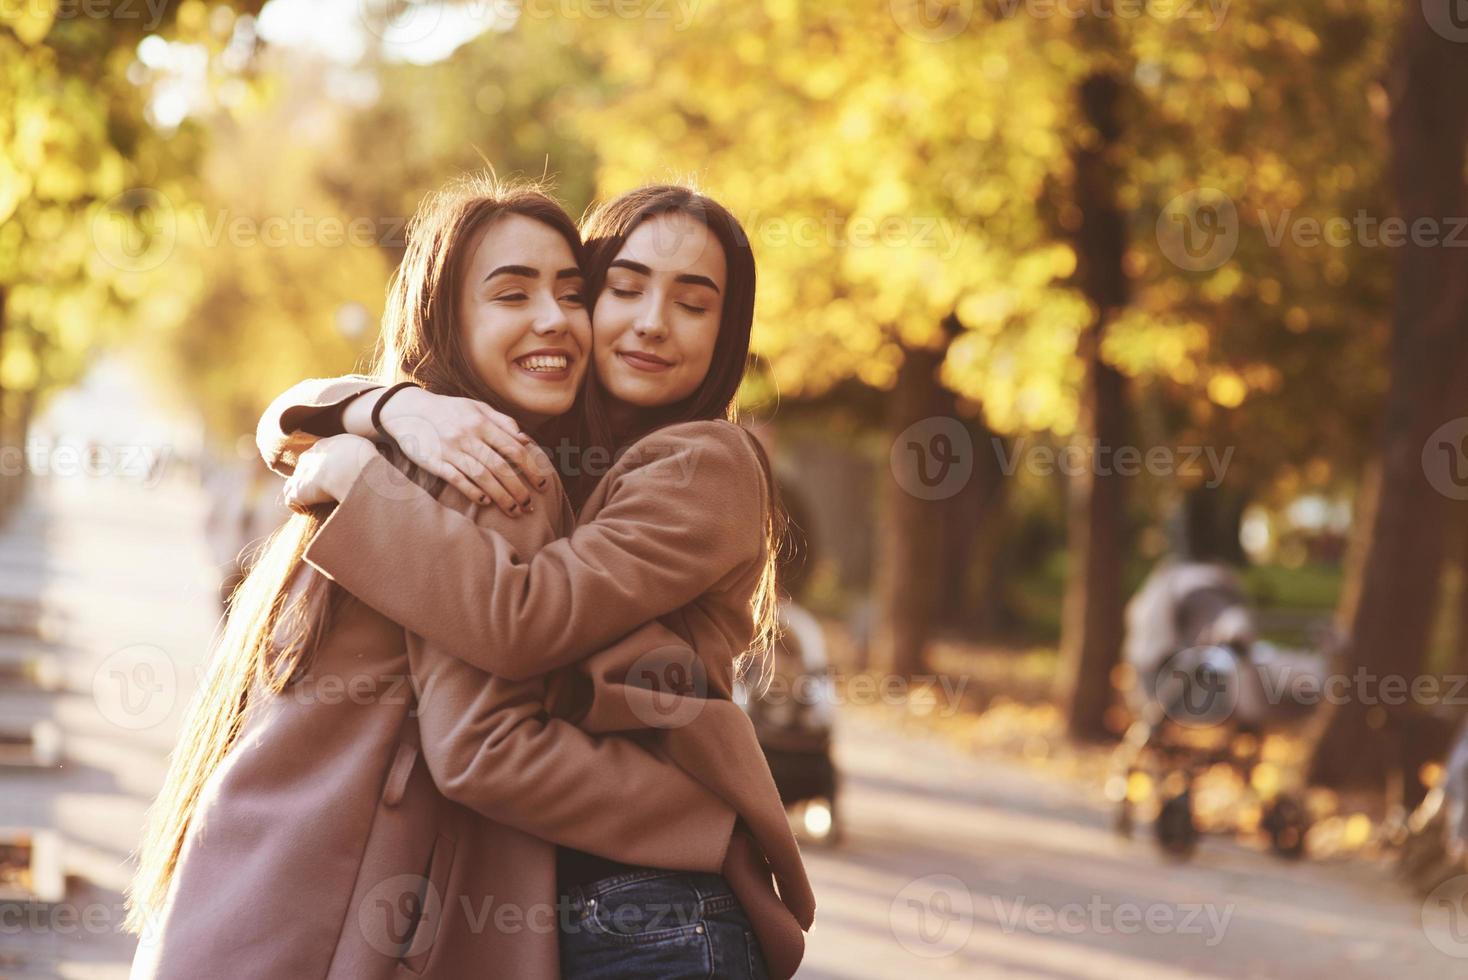 profilo laterale di giovani ragazze gemelle brune sorridenti che si abbracciano e si divertono in un cappotto casual in piedi vicino l'una all'altra in un vicolo soleggiato del parco autunnale su sfondo sfocato foto